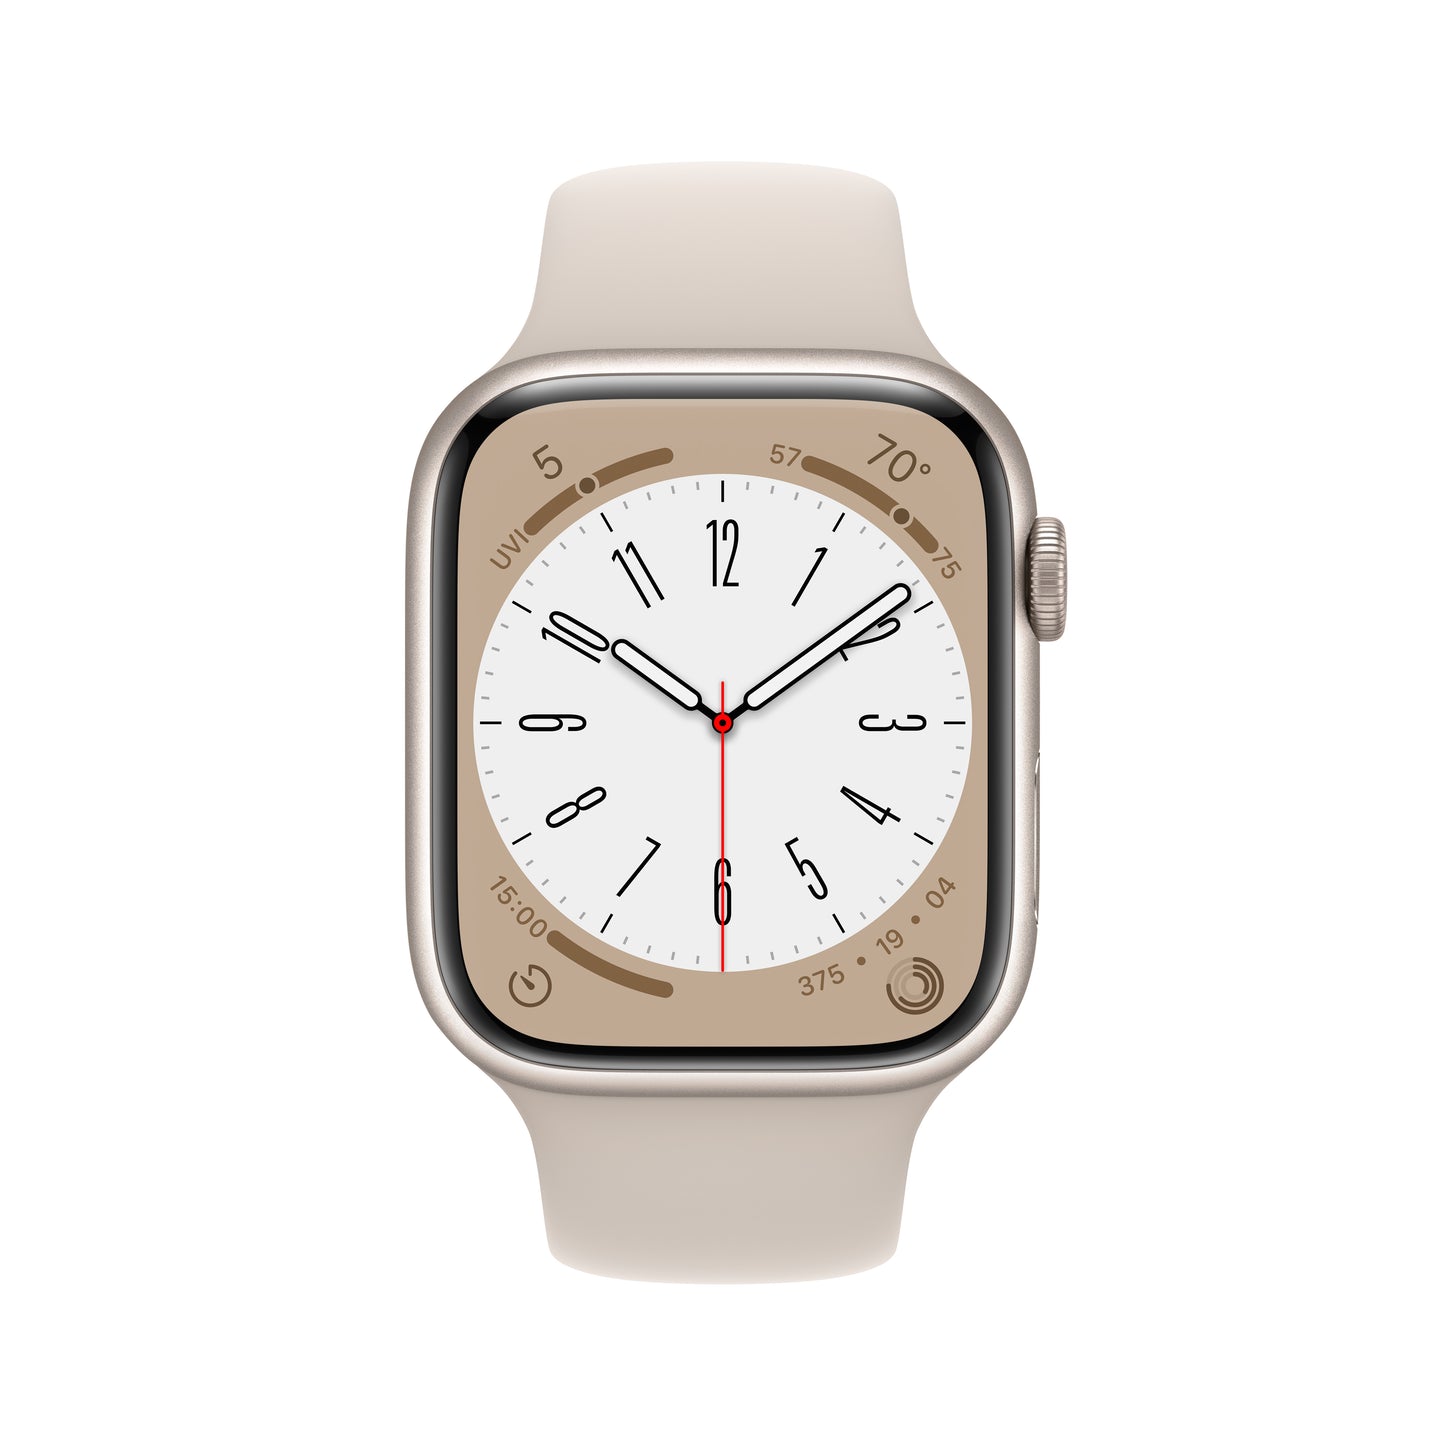 Apple Watch Series 8 (GPS) - Caja de aluminio en blanco estrella de 45 mm - Correa deportiva blanco estrella - Talla única